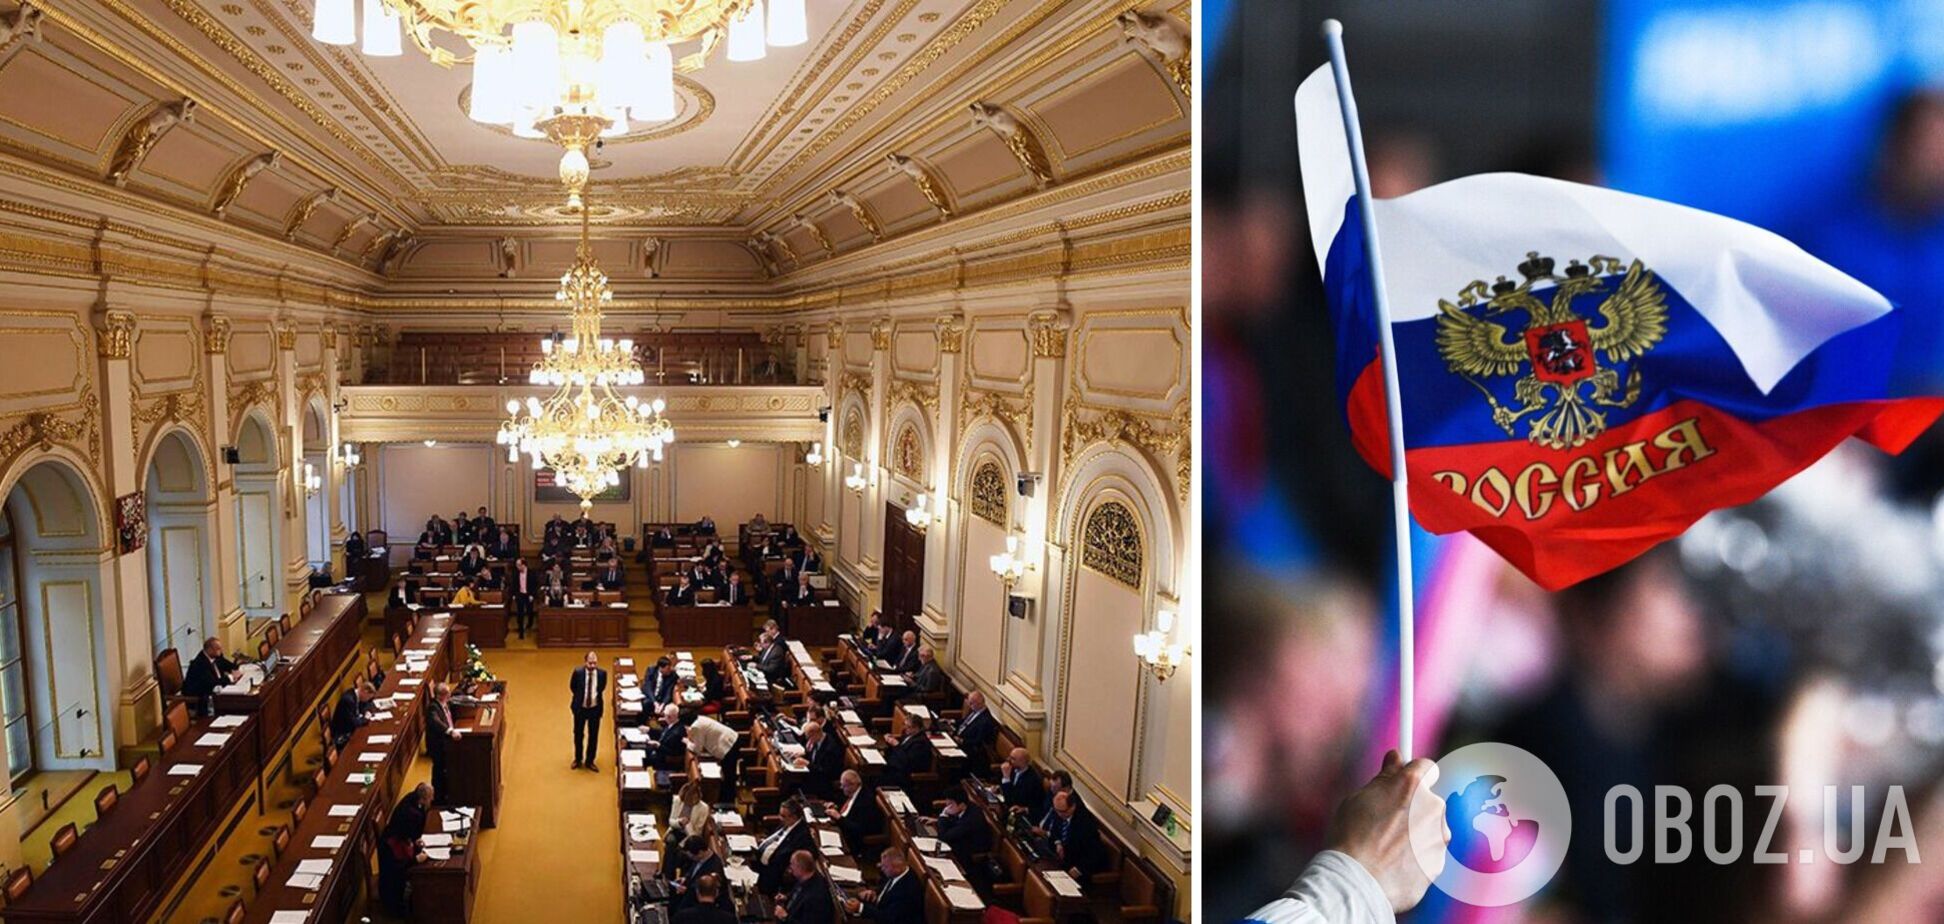 В Палате представителей Чехии официально признали российский режим террористическим